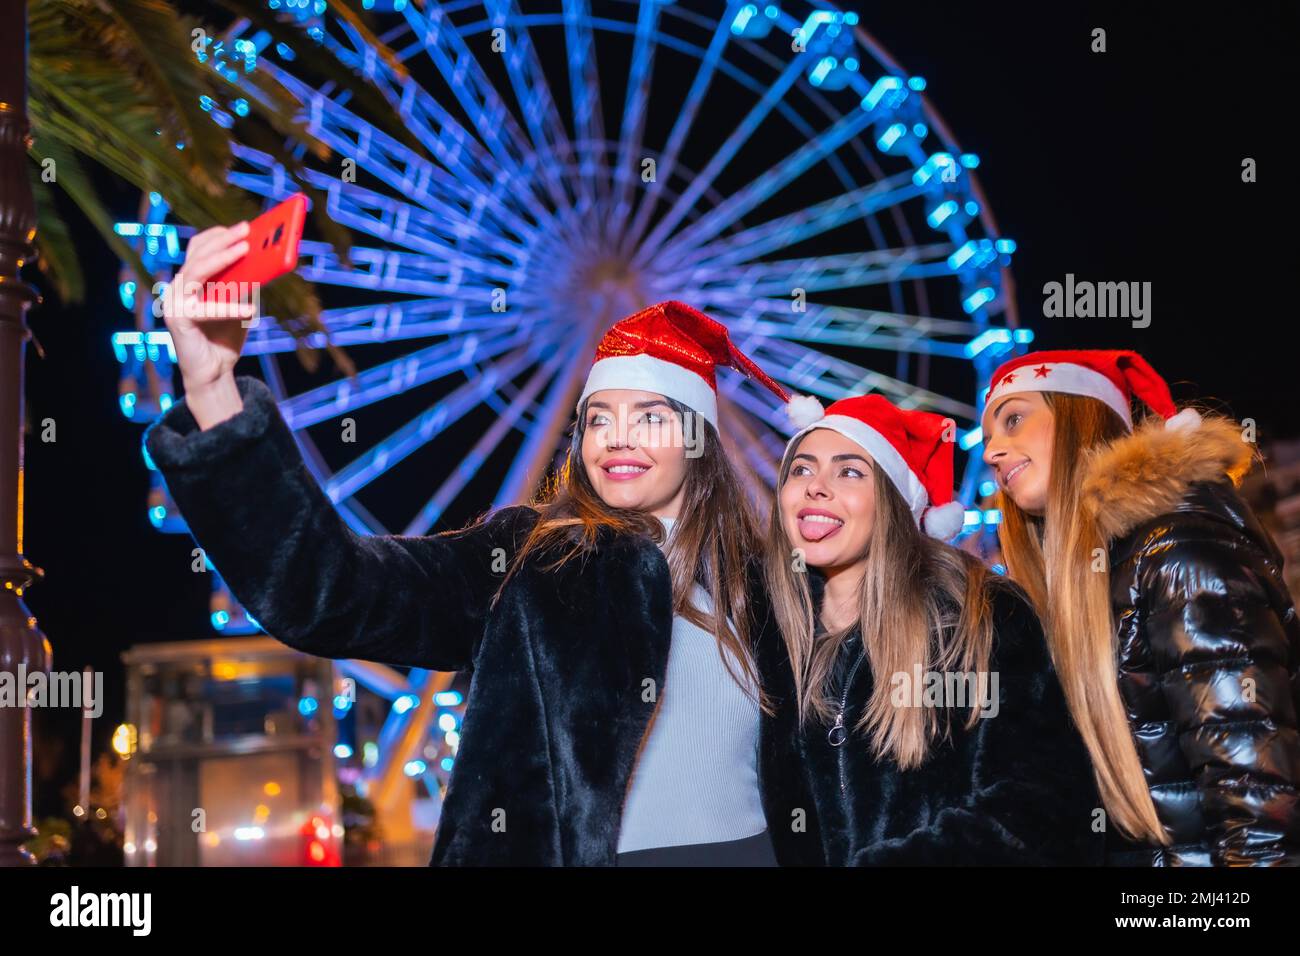 Noël dans la ville la nuit, décoration en hiver. Amis sur une grande roue illuminée prenant un selfie avec le téléphone Banque D'Images